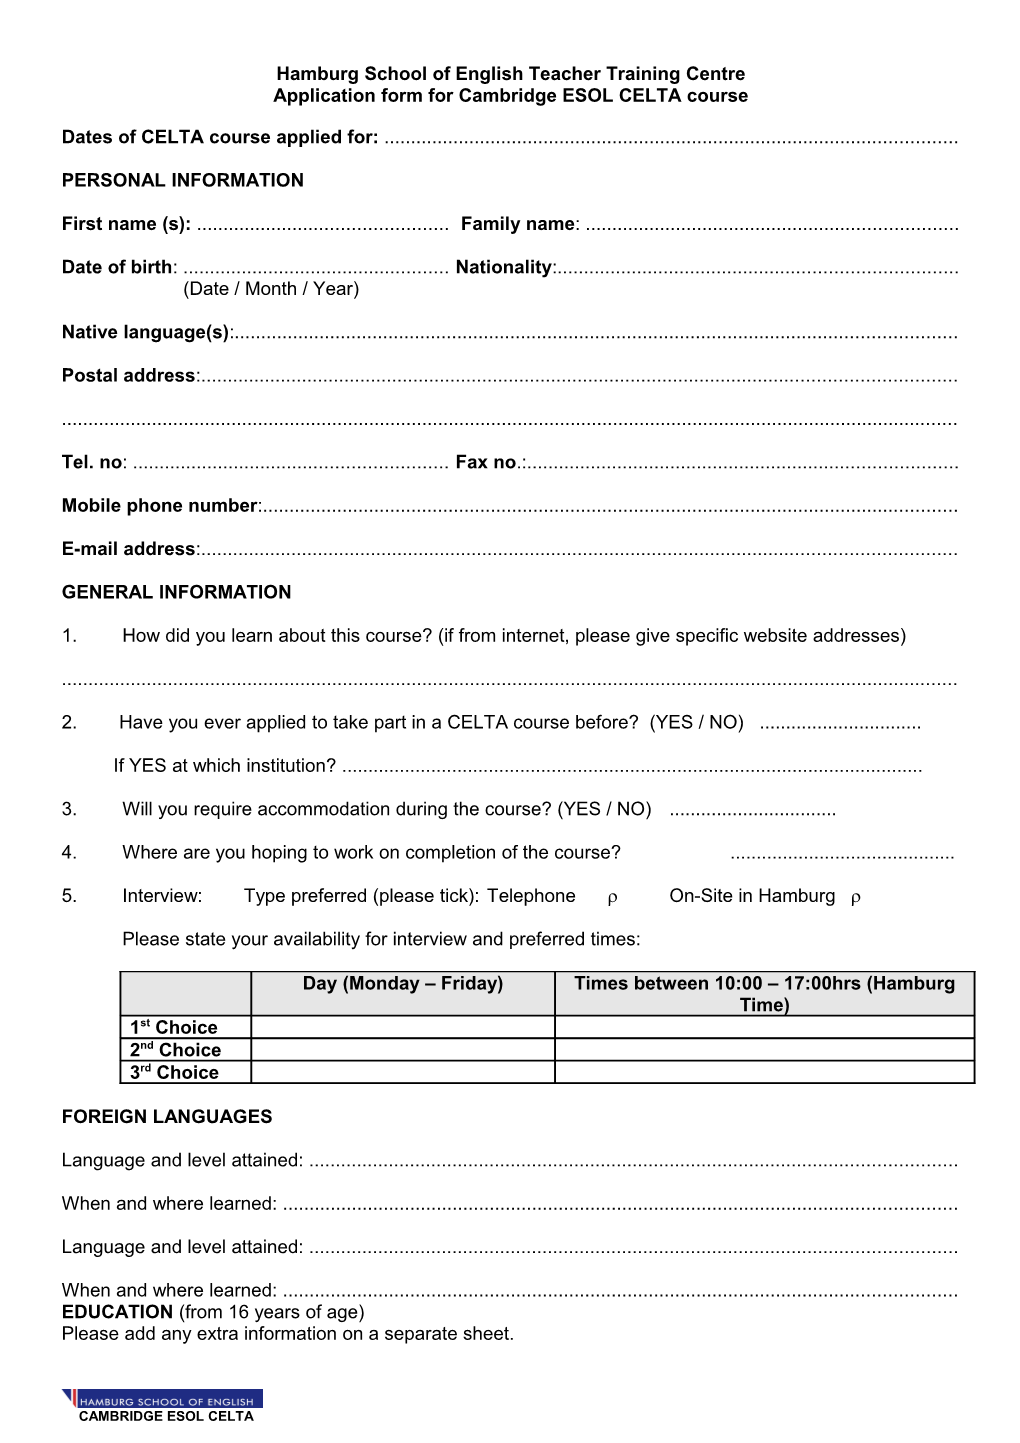 Application Form for Cambridge/RSA CELTA Course